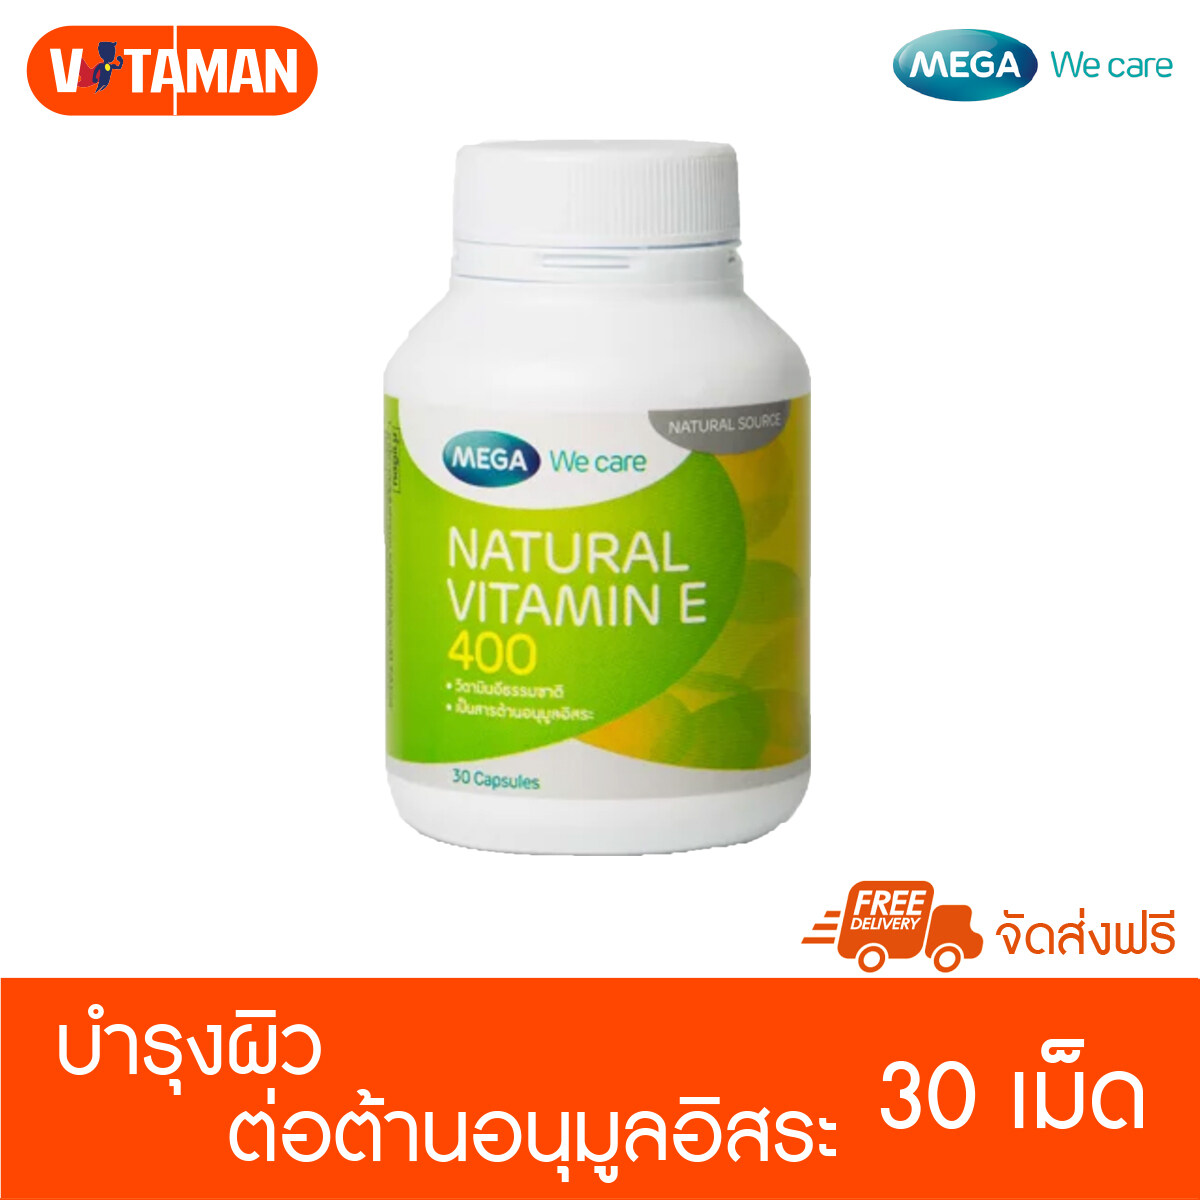 จัดส่งฟรี! Mega We Care Natural Vitamin E 400 IU 30 Capsules / 1 ขวด Nat E เมก้า วิตามินอี mega vit e